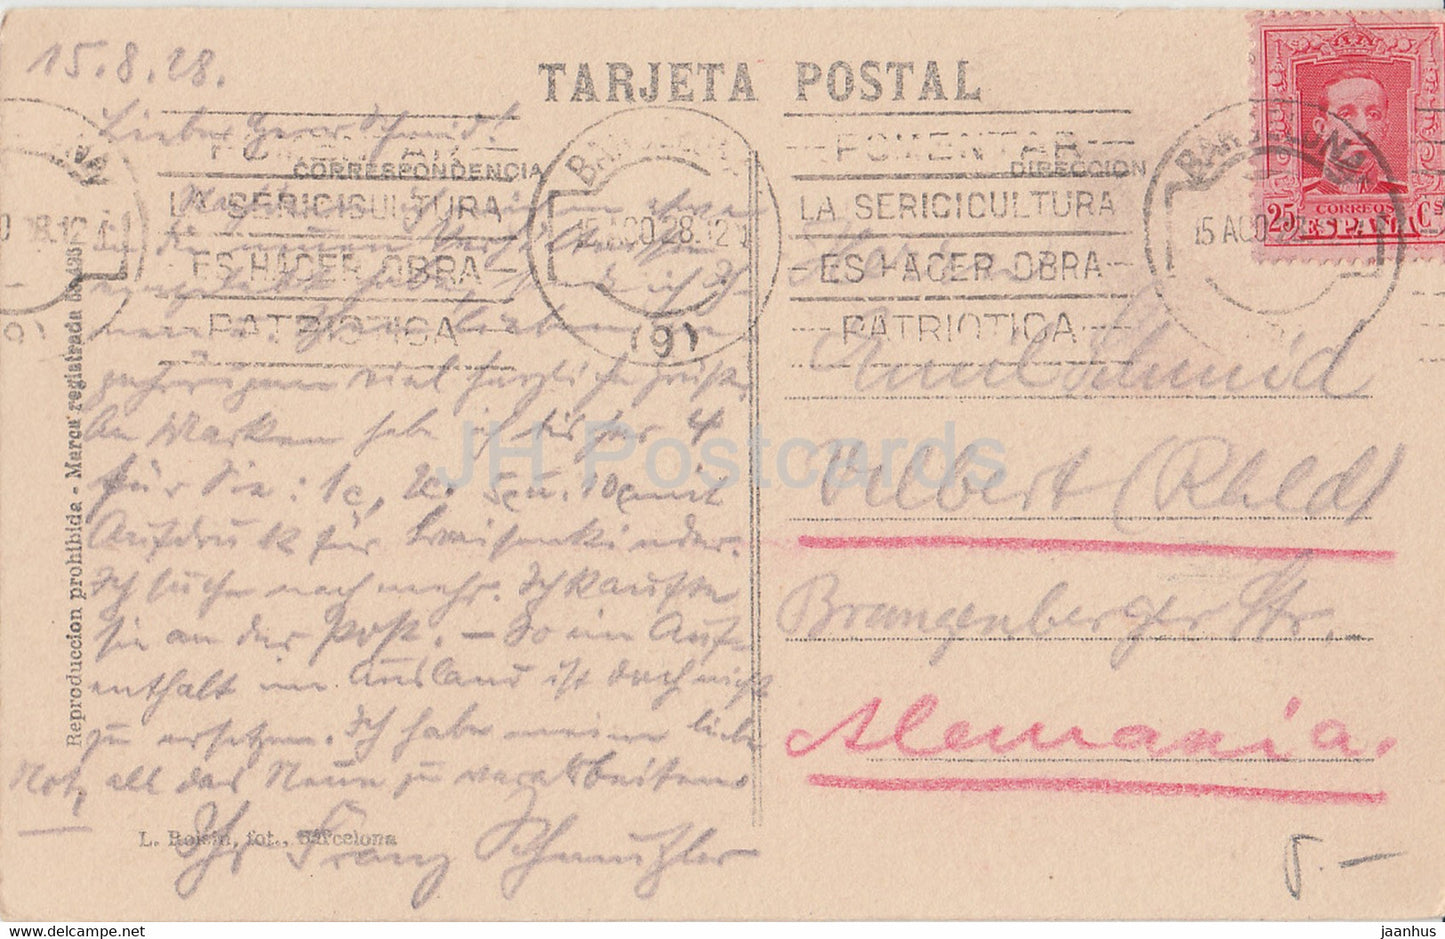 Barcelone - Arco del Triunfo - tram - 10 - carte postale ancienne - 1928 - Espagne - utilisé